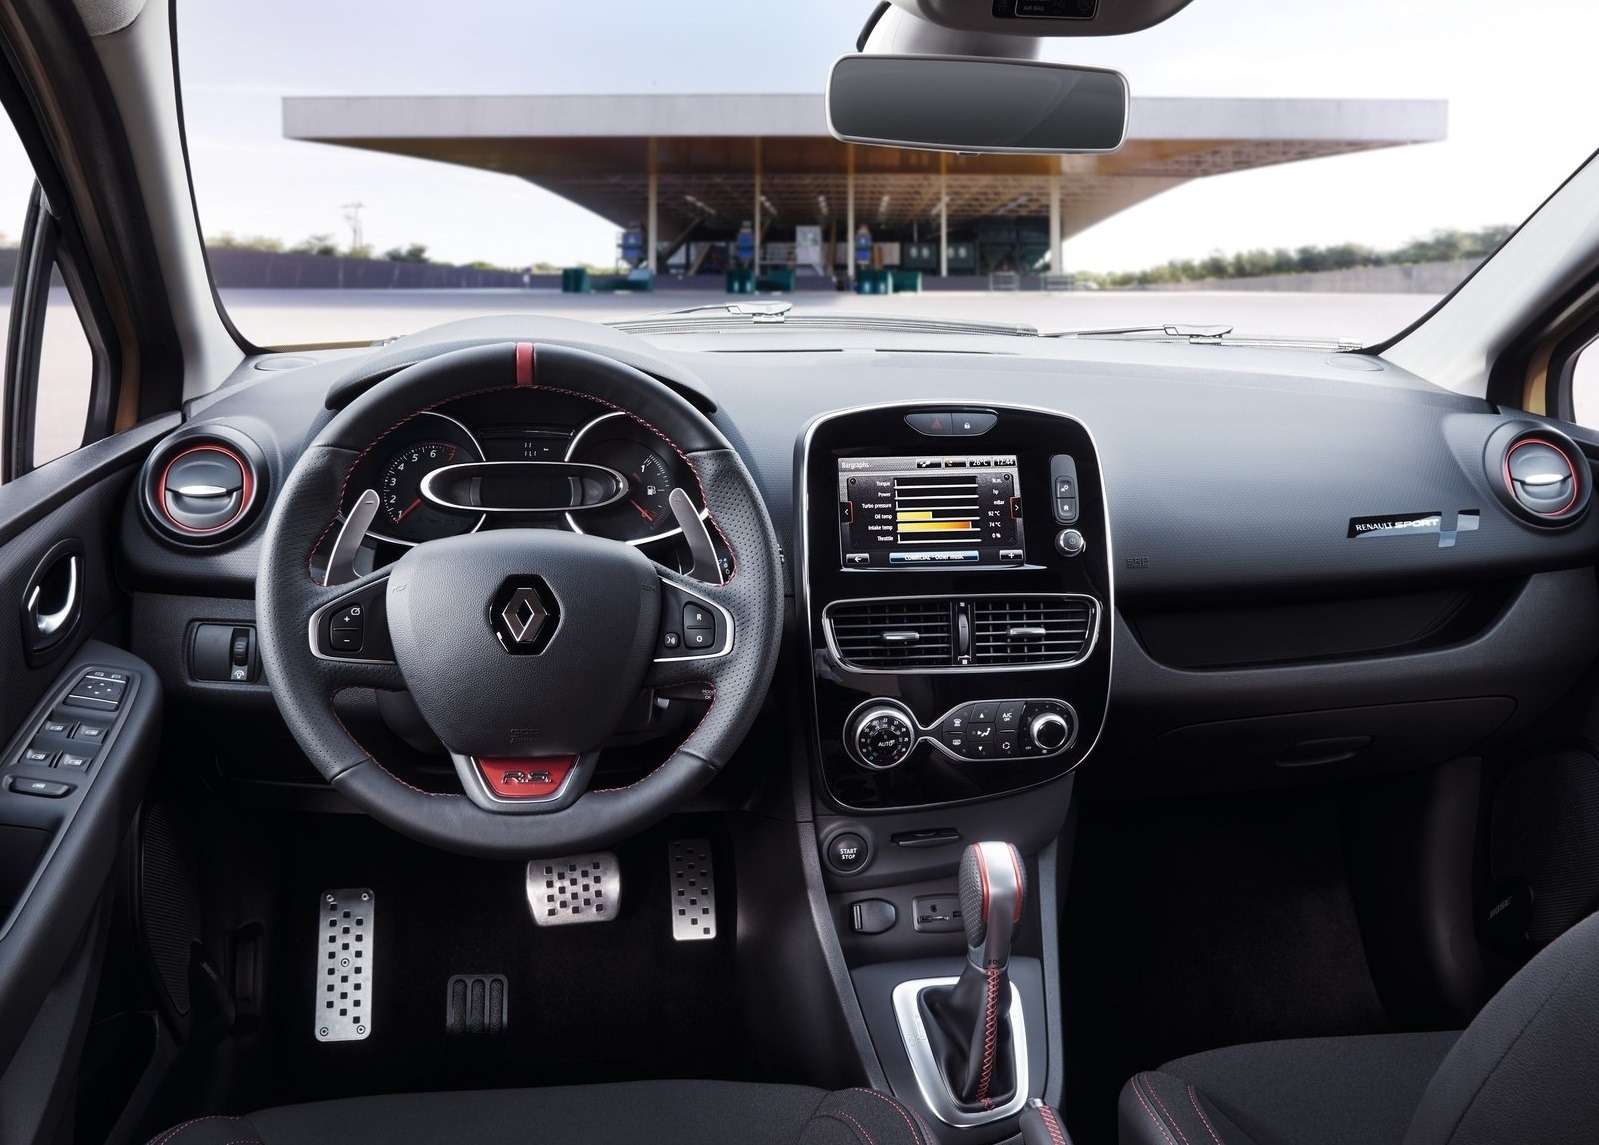 Рестайлинг со звуком: Renault Clio RS фокусируется на штрихах — фото 605409